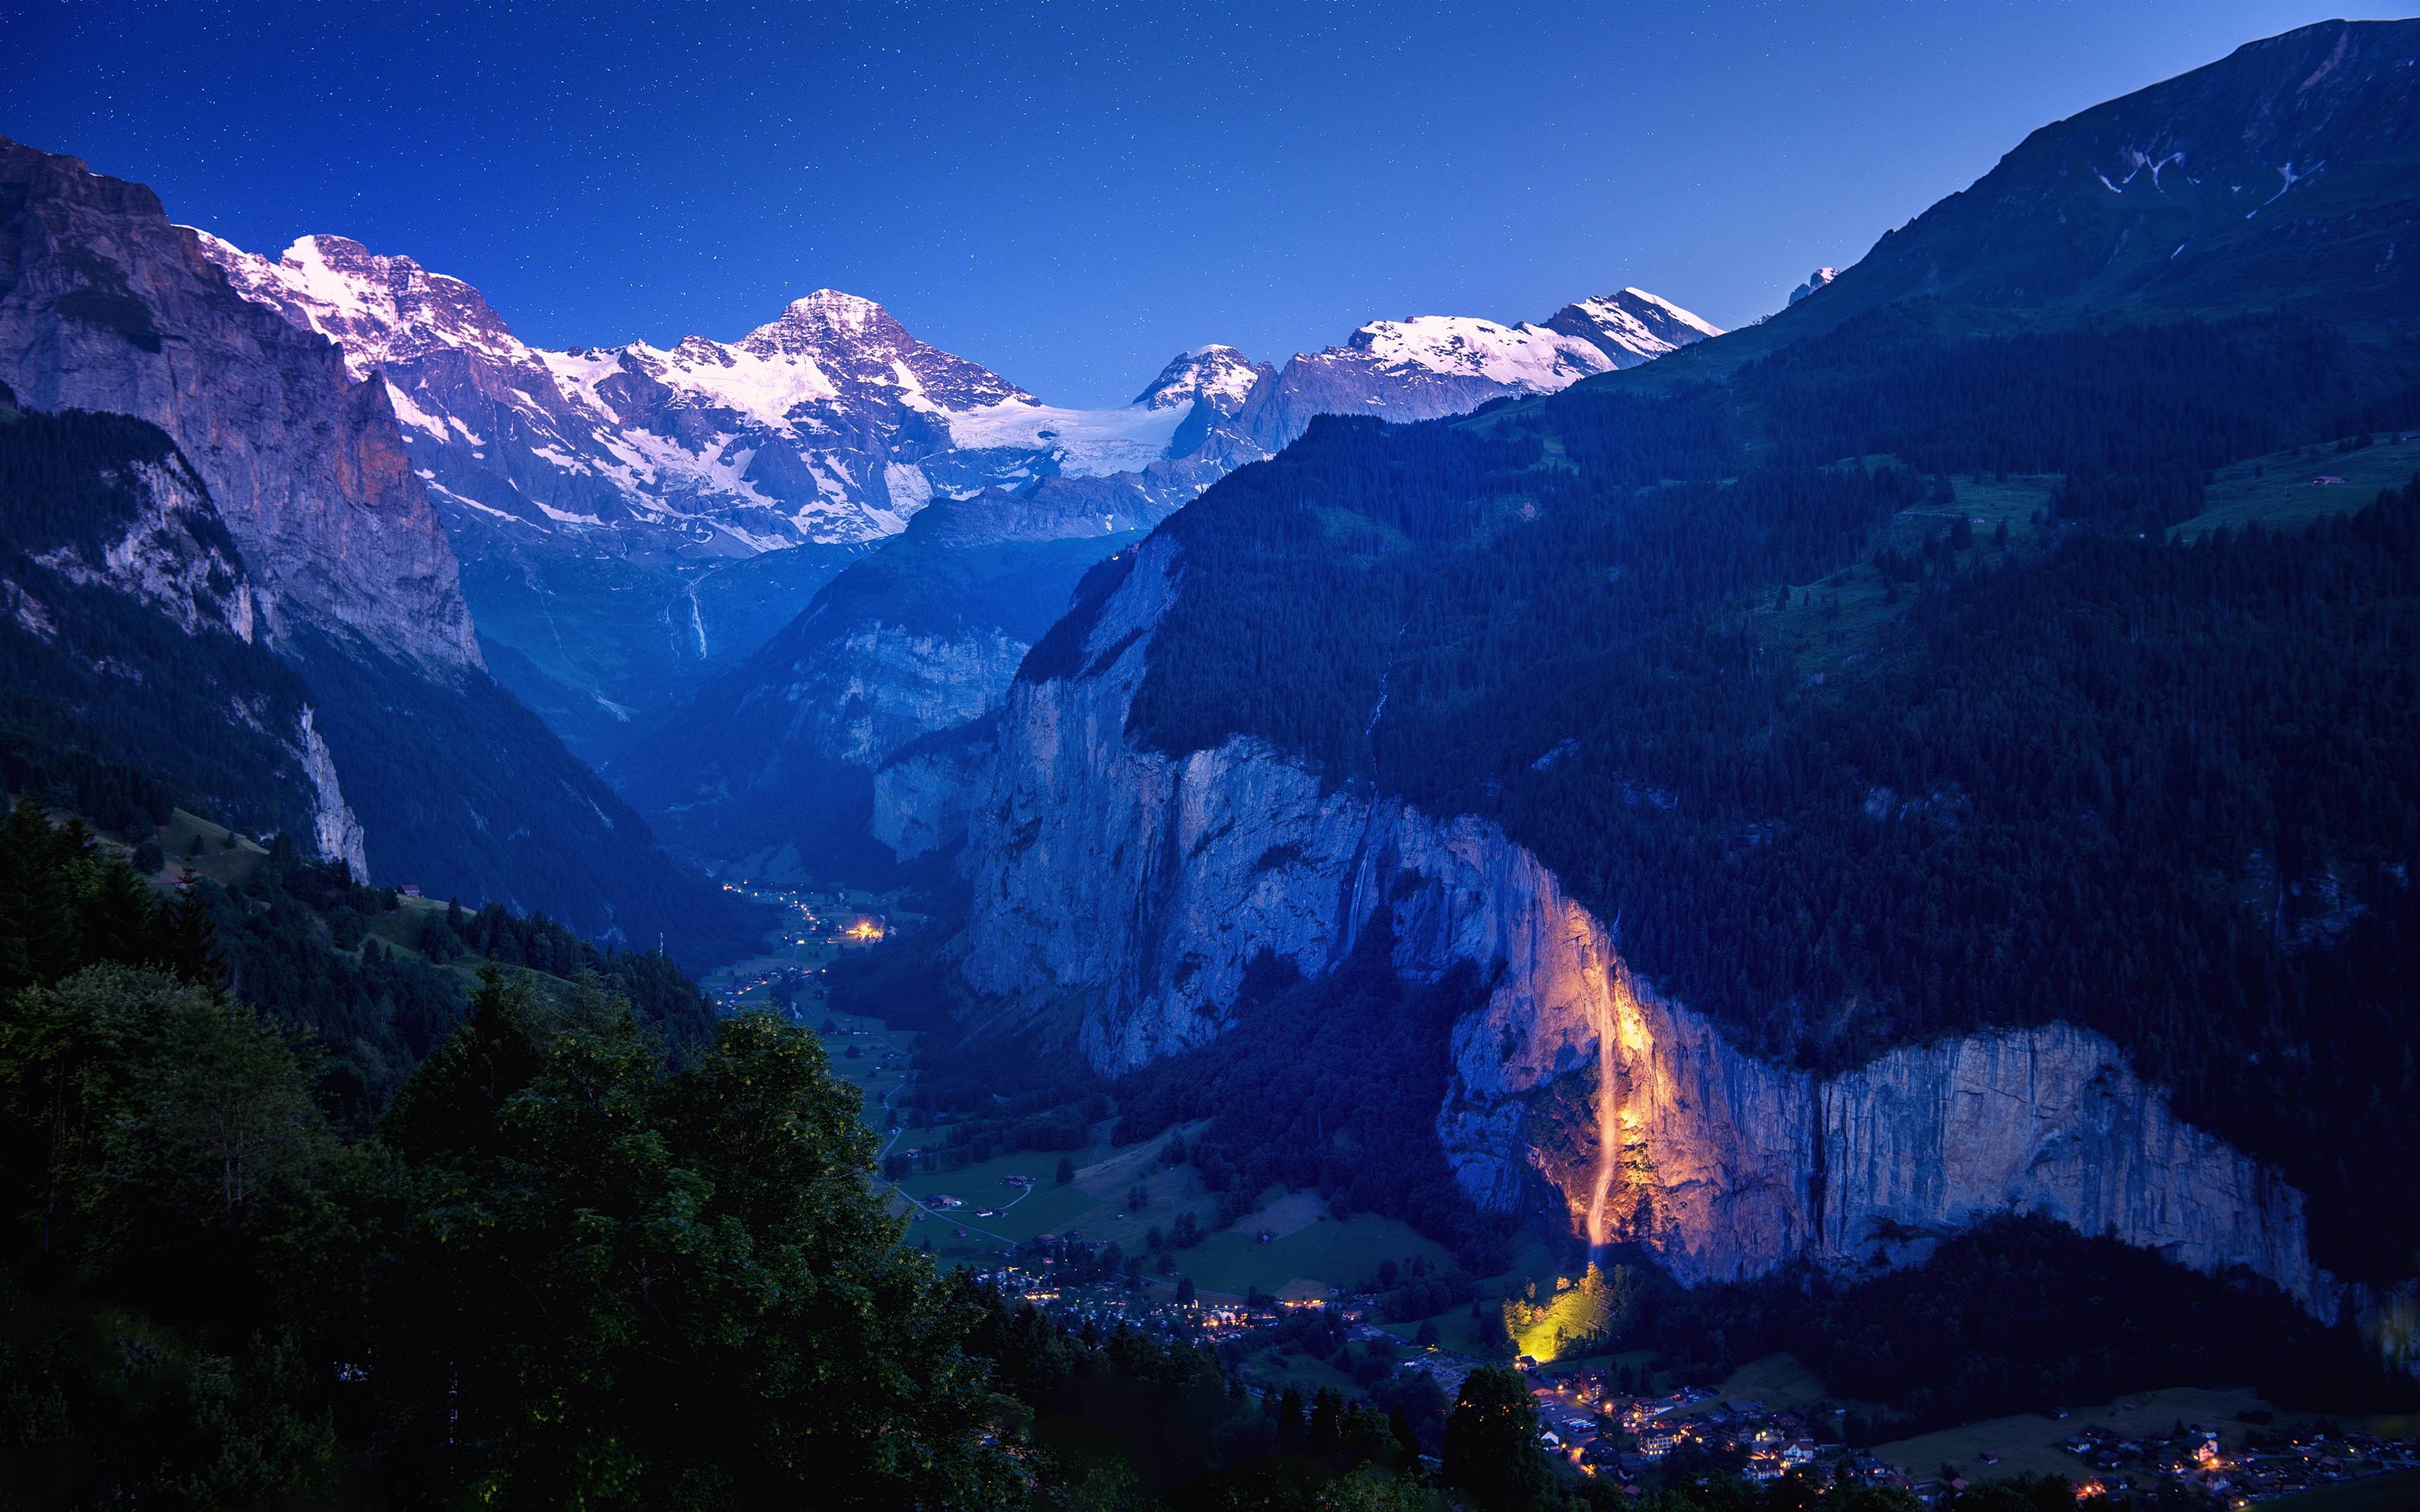 Lauterbrunnen Valley for 3840 x 2400 Widescreen resolution